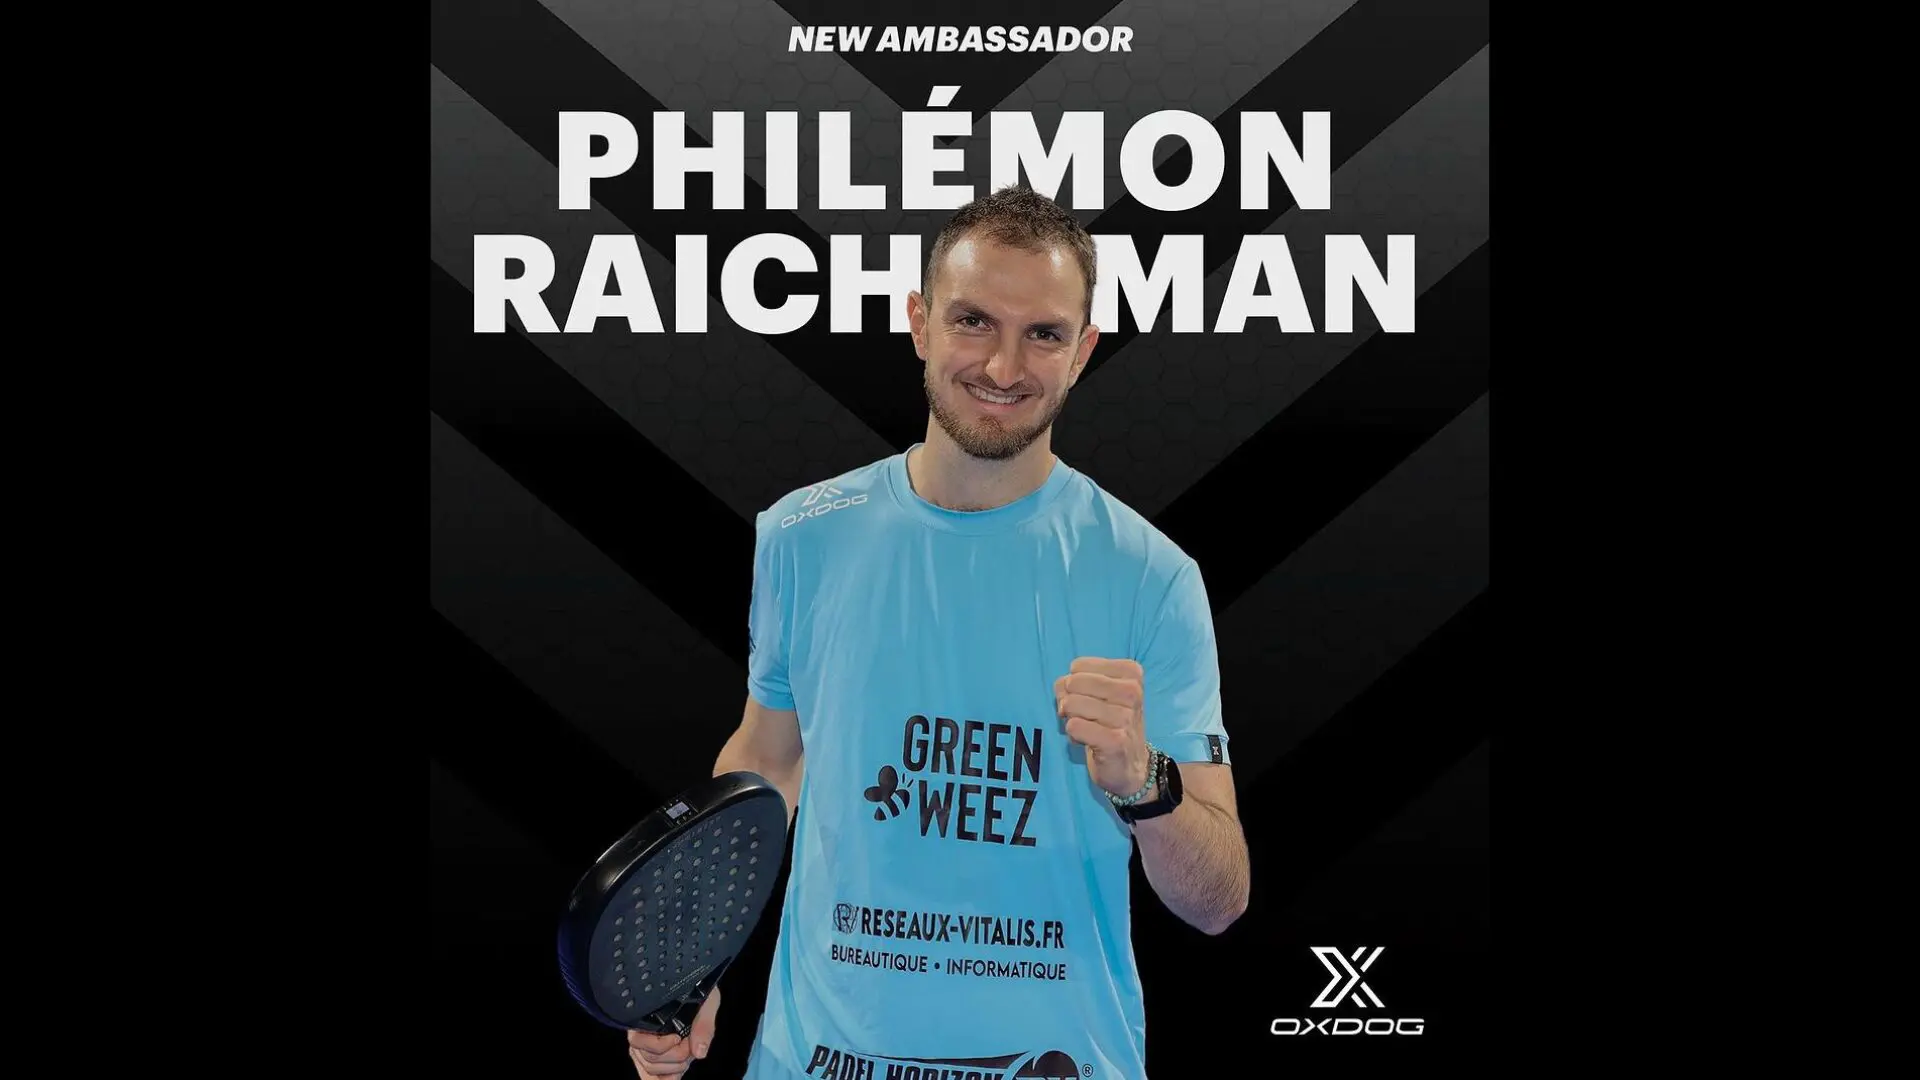 Philémon Raichman joins the Team Oxdog